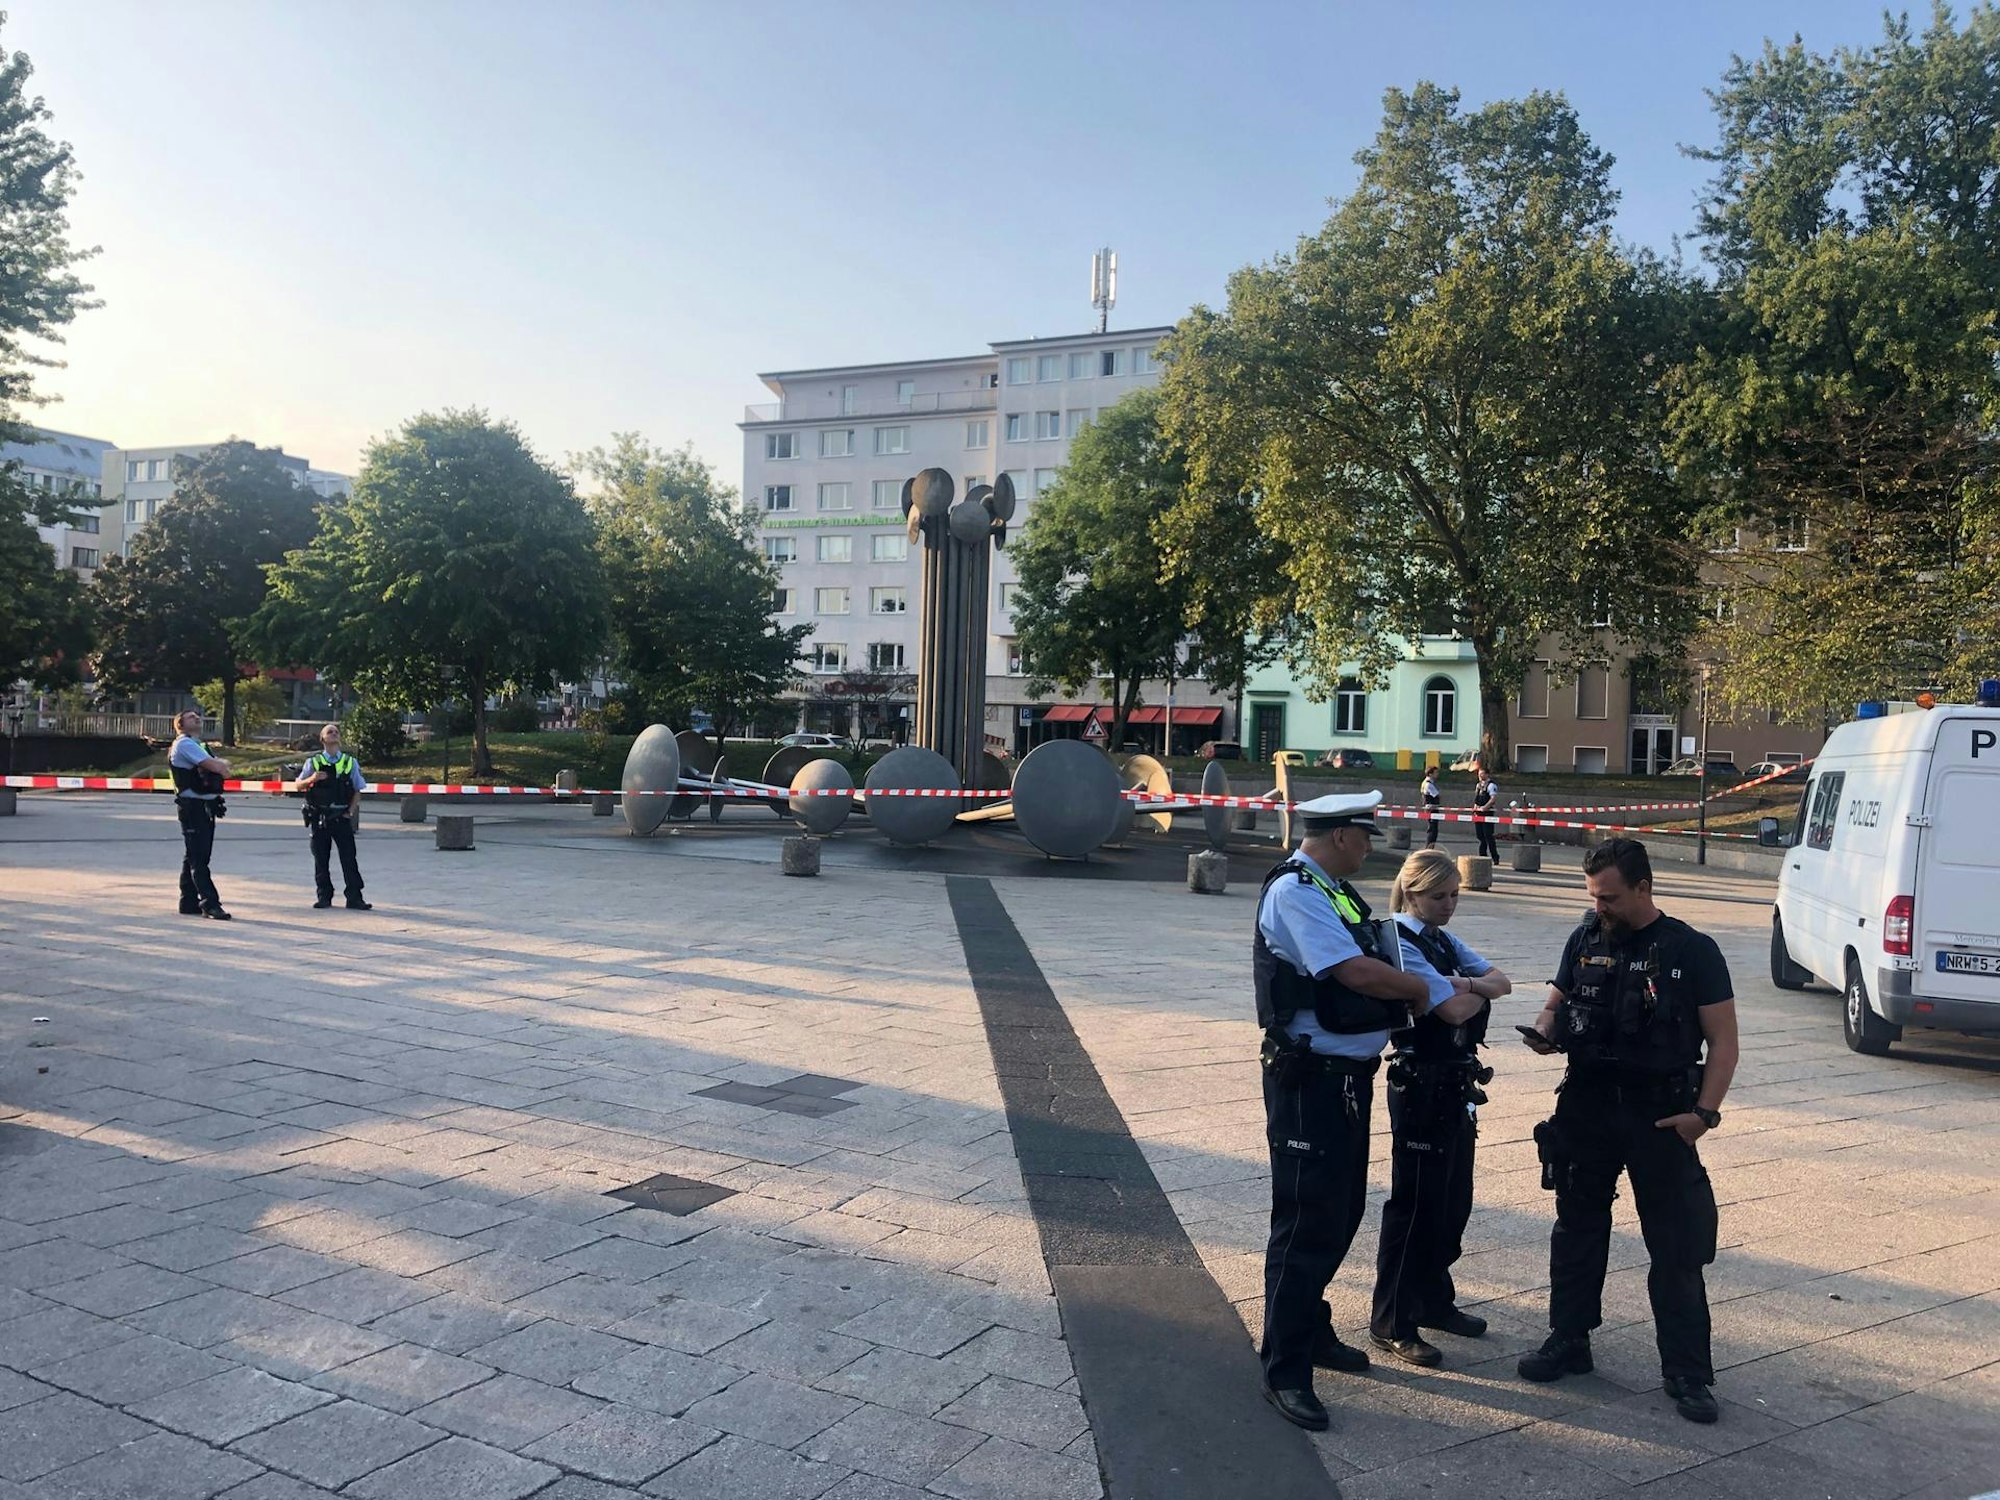 Polizisten sichern einen Tatort am Kölner Ebertplatz.